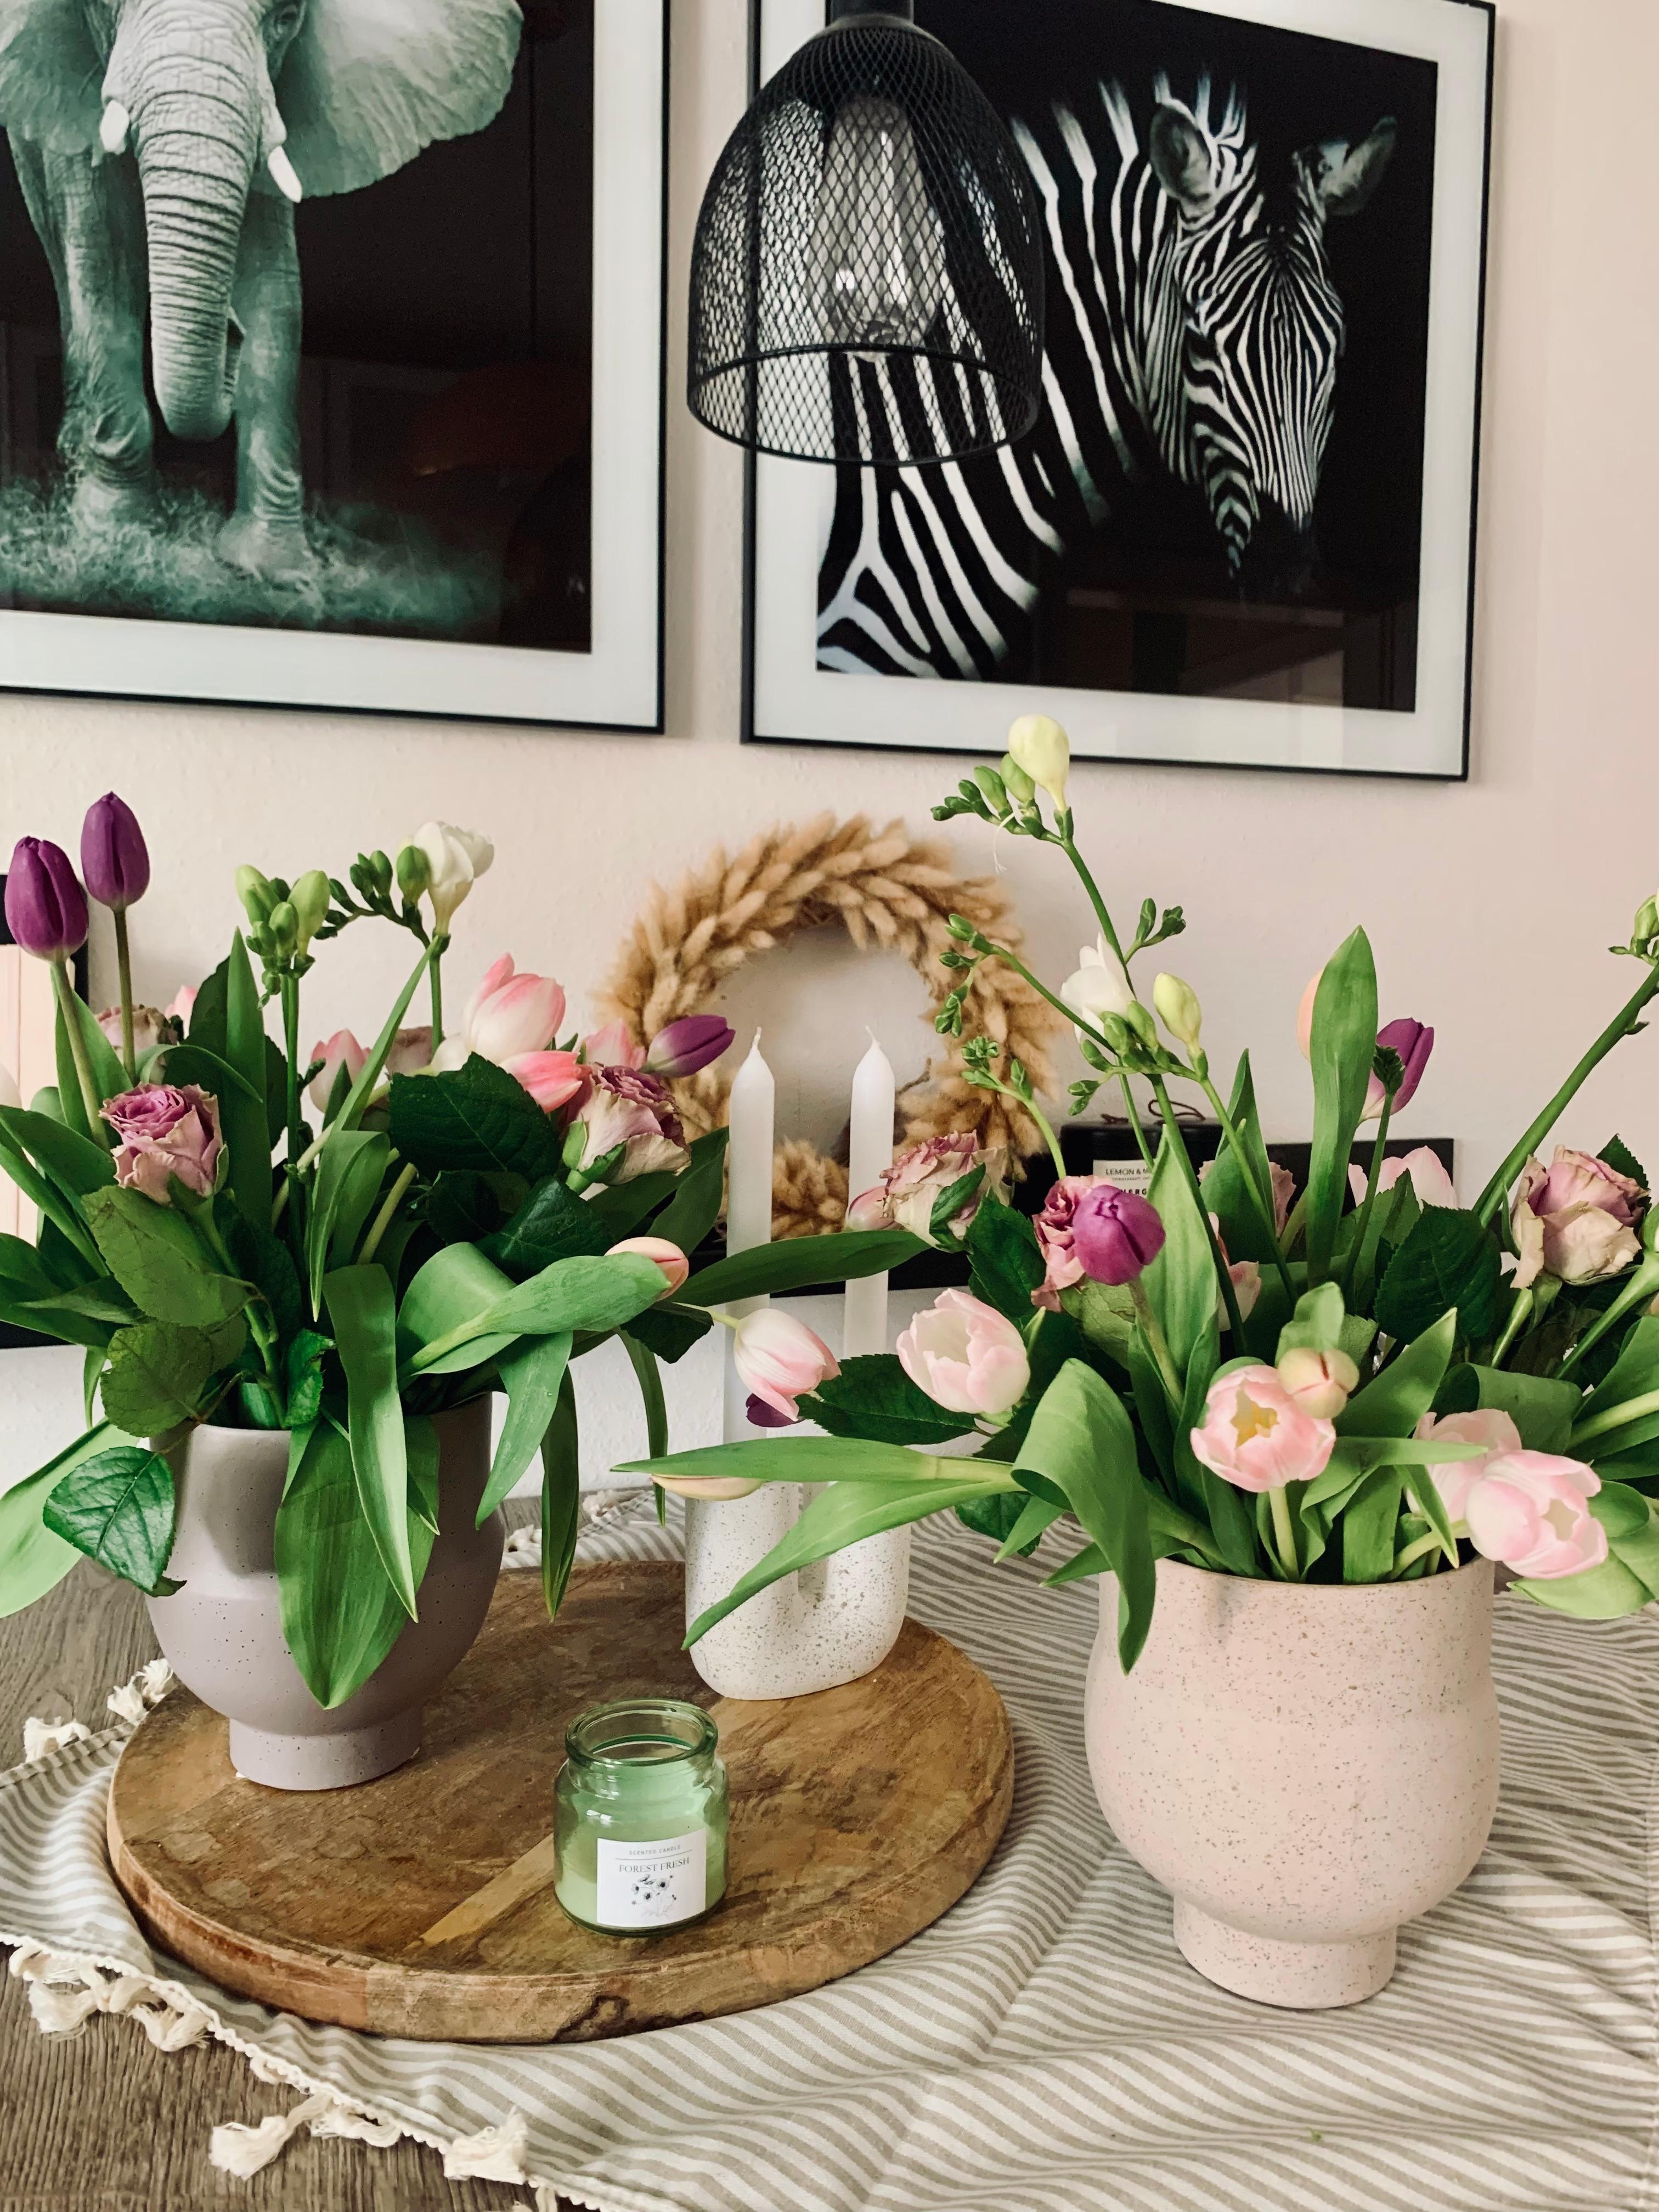 Zwillings Blumenstrauß 💞

#küche #flower #wandbild #lampe #mitteldecke #kerzen #esstisch #kranz #vasen #home 